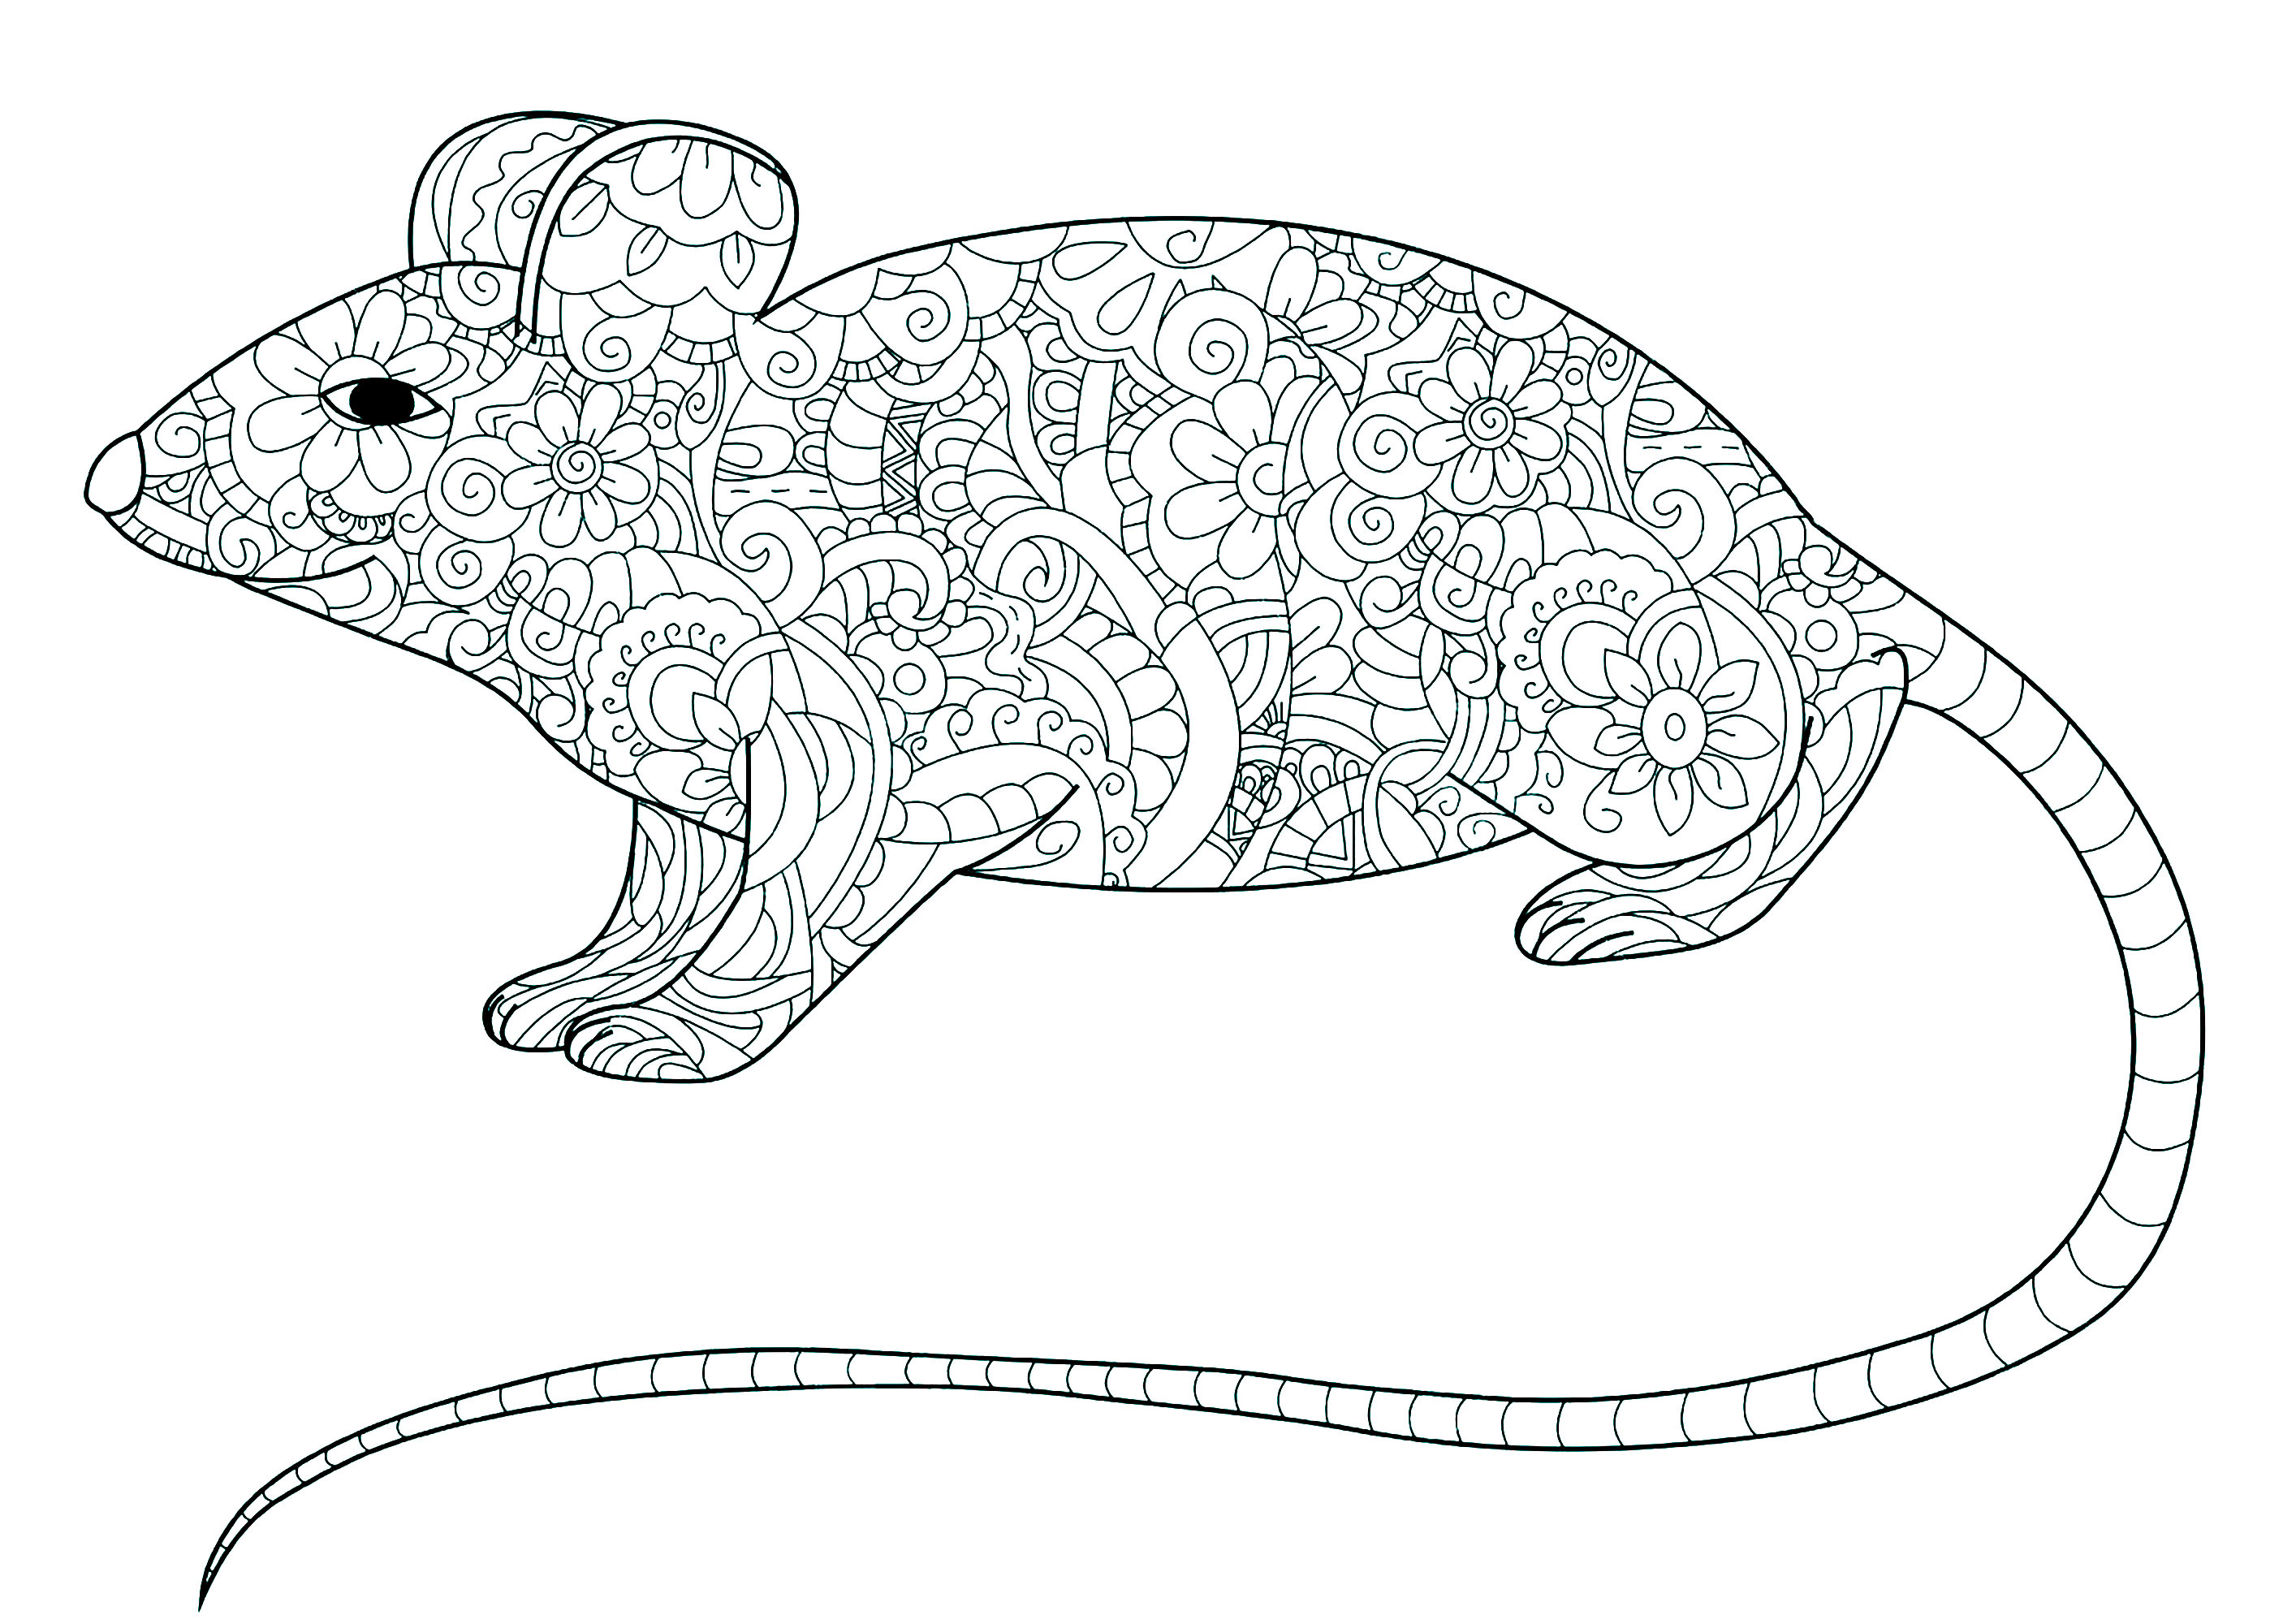 Pagina da colorare di un topo con la coda lunga e il corpo pieno di motivi floreali